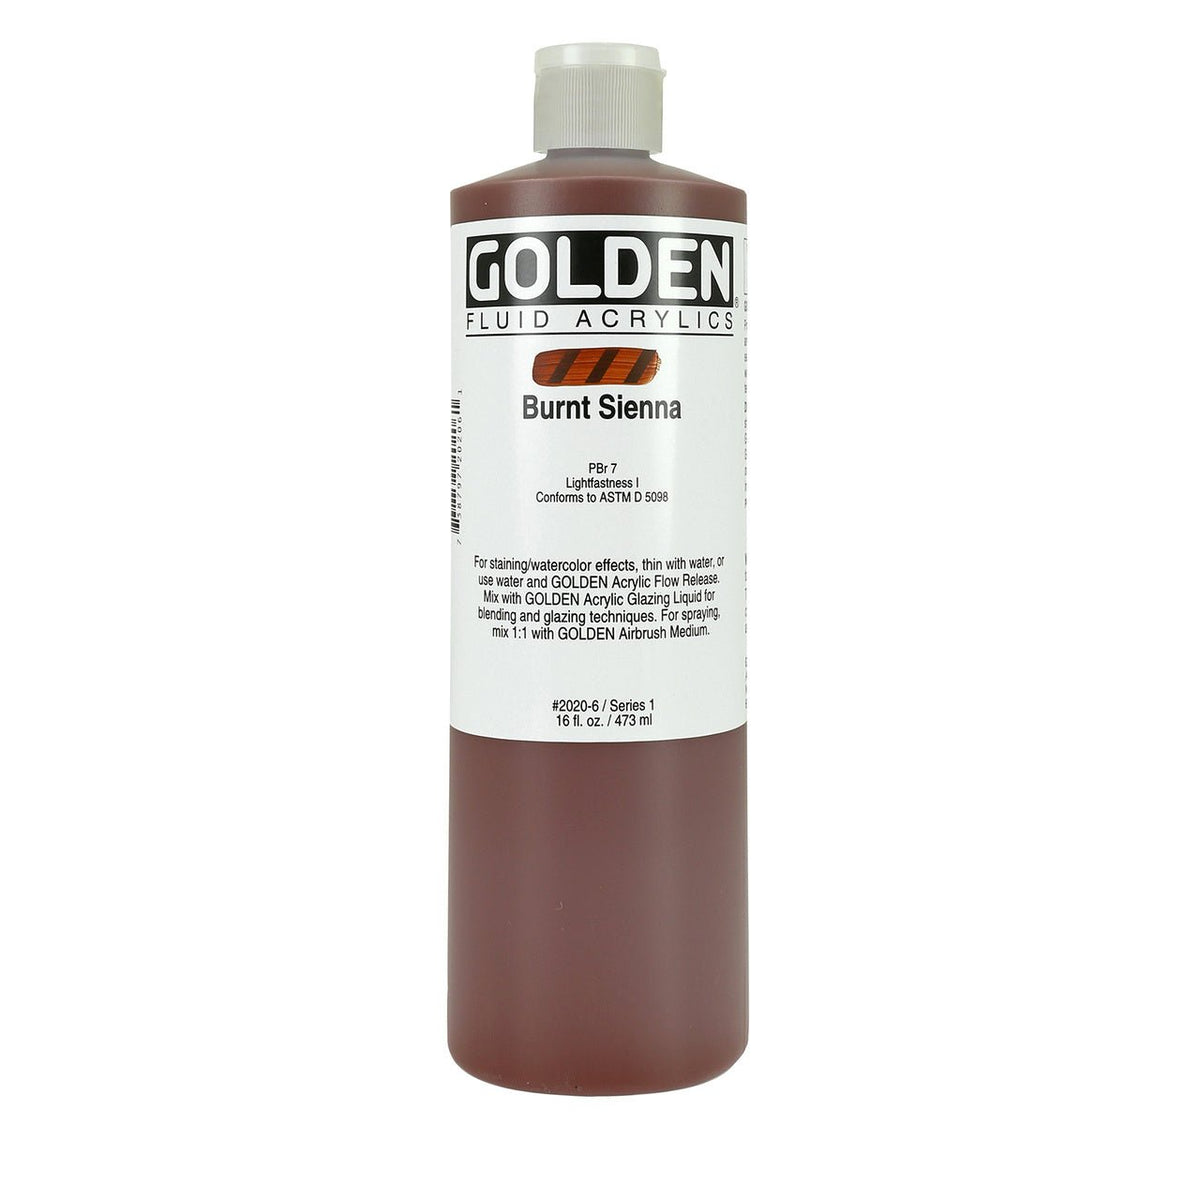 Golden Fluid Acrylic Burnt Sienna 16 oz - merriartist.com